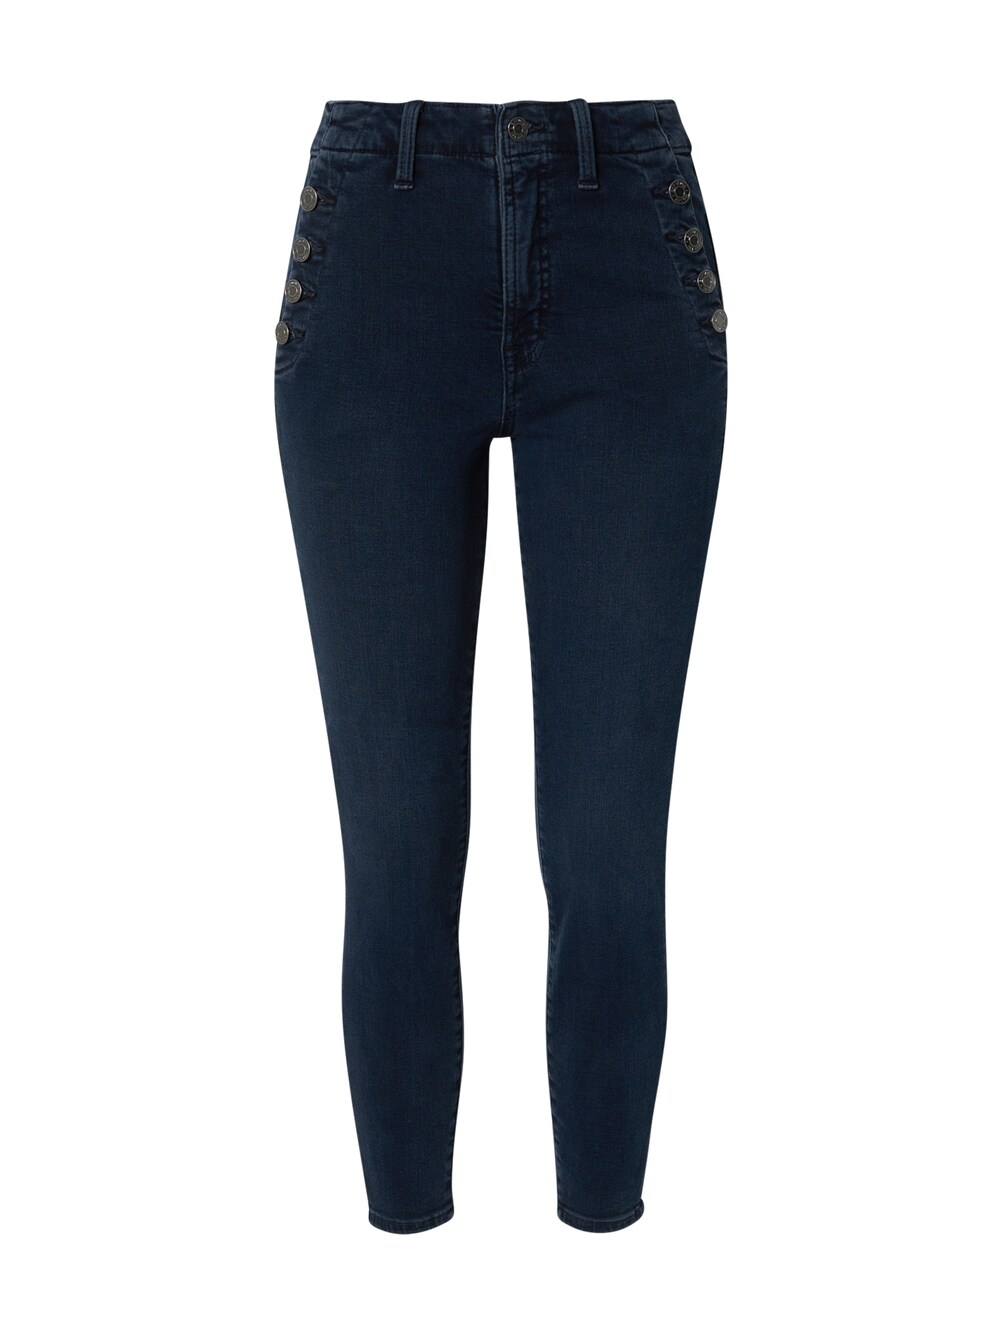 Узкие джинсы Gap, темно-синий узкие джинсы gap черный